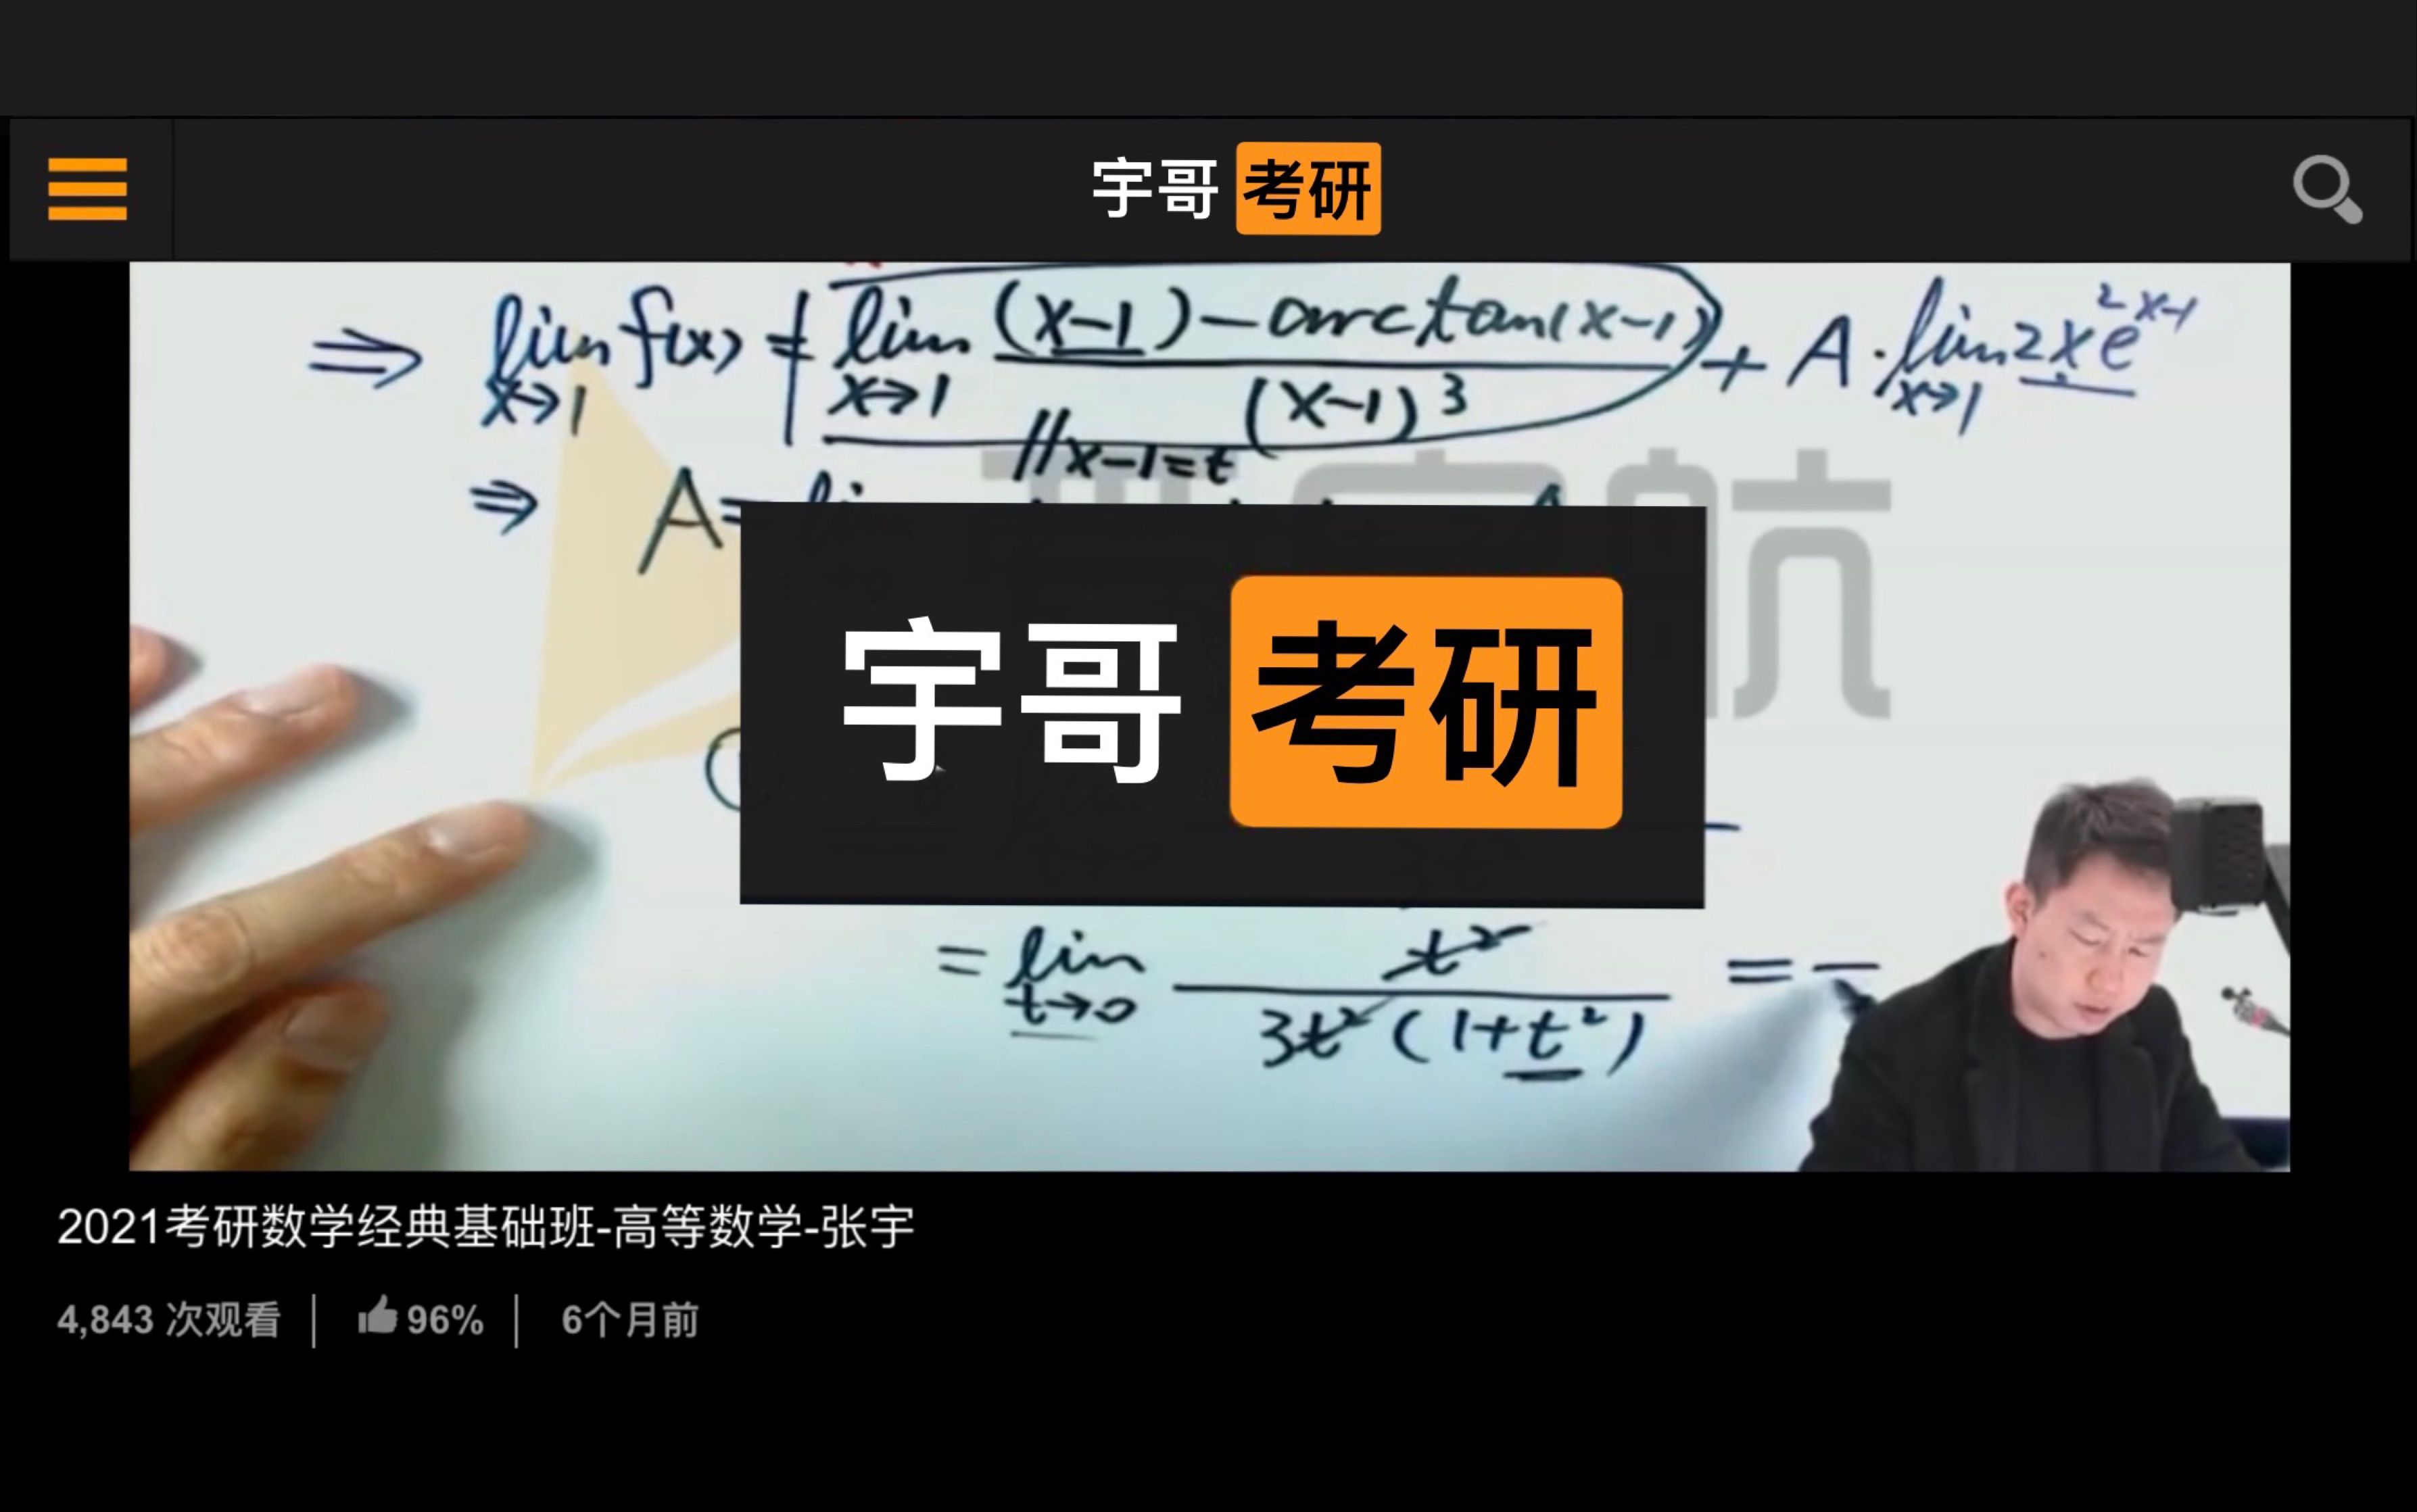 张宇:“国际 性 学习网站”名师! 考研学子竟在X站看到宇哥!